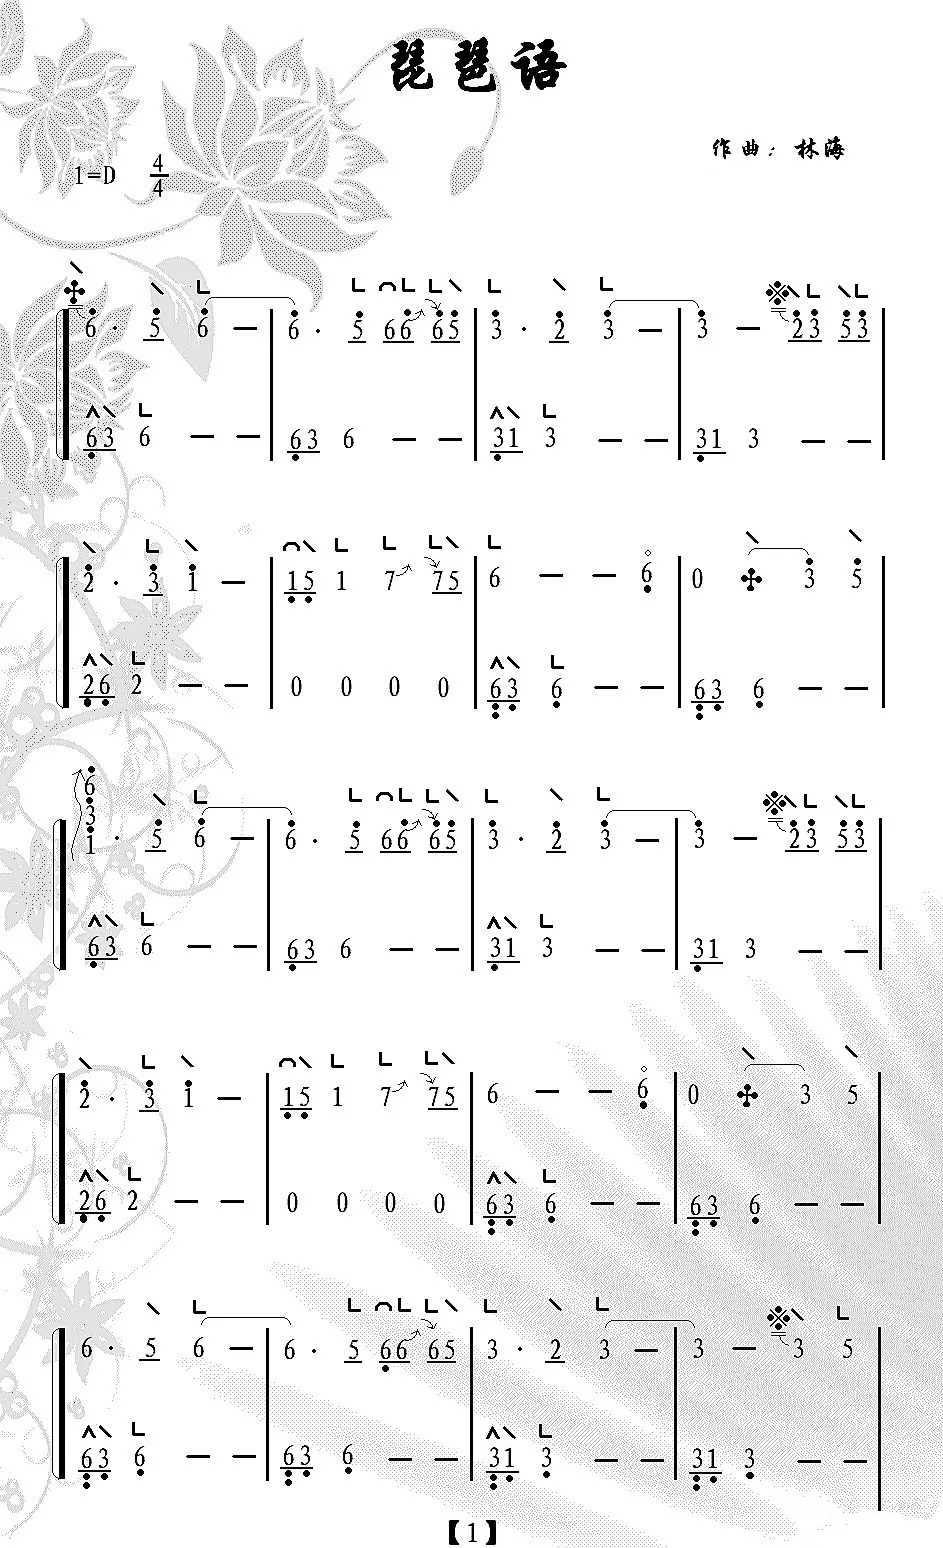 《琵琶语》古筝曲 林海-古筝唯美演奏 琵琶声，到如今还在这响起1